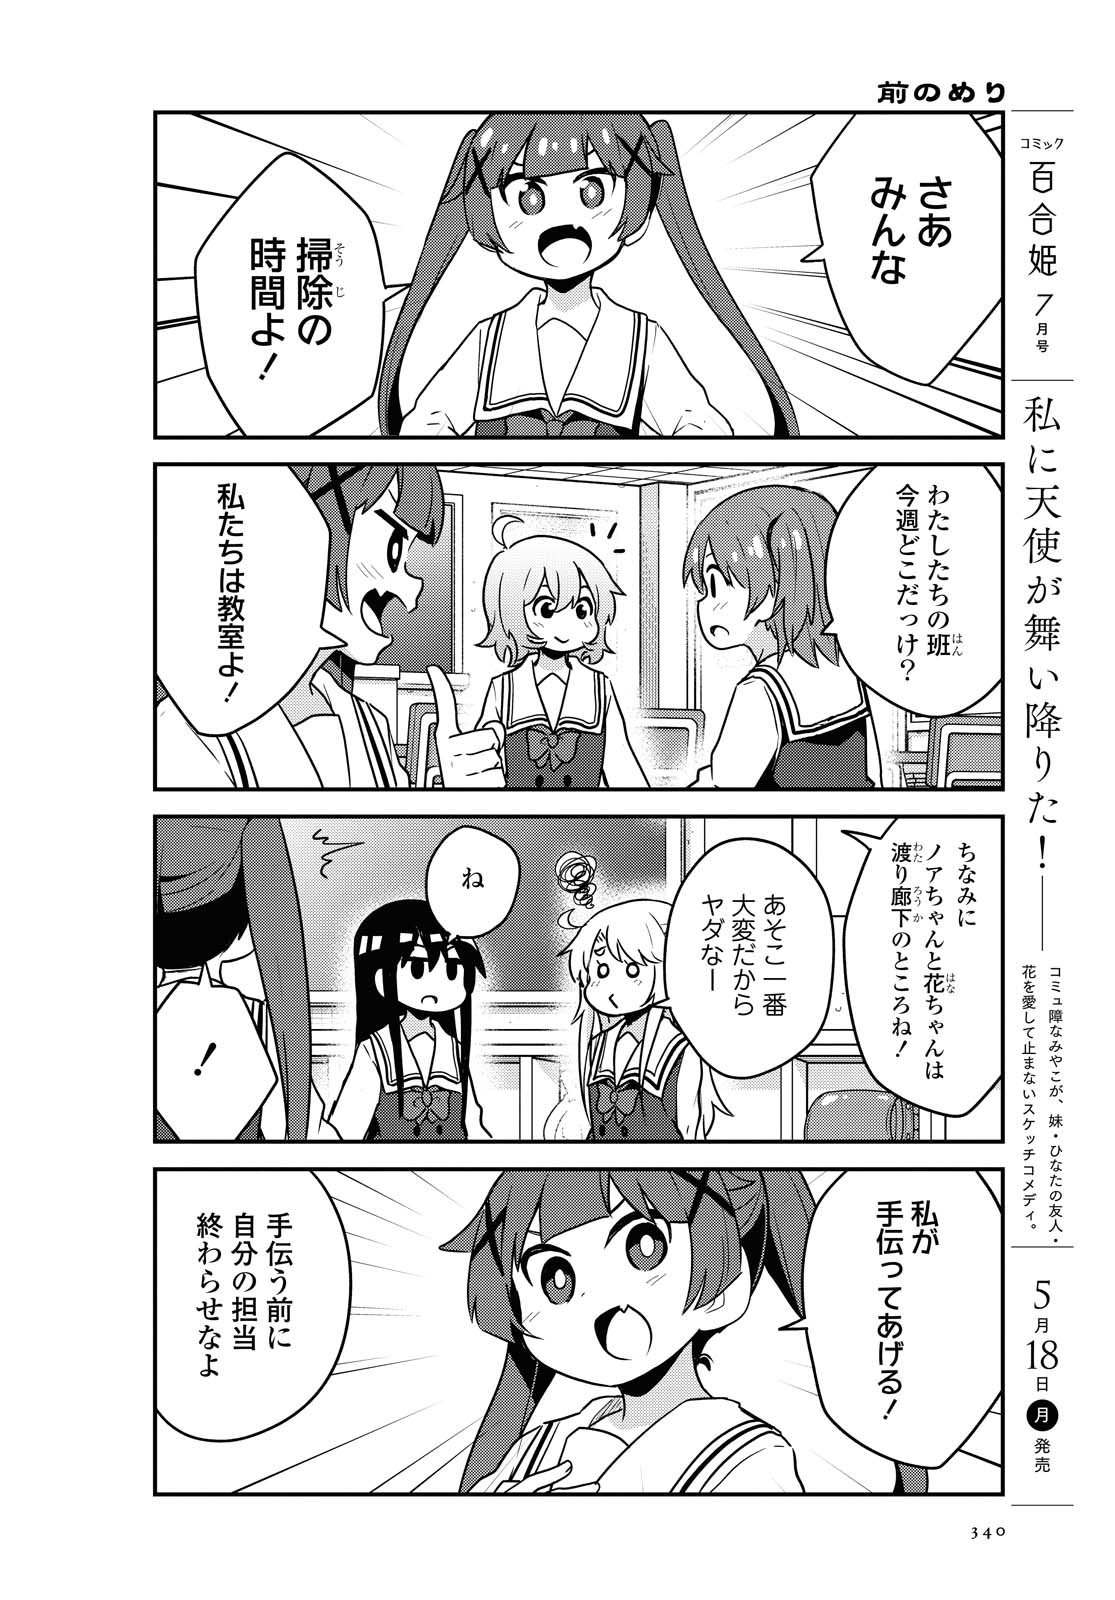 Watashi ni Tenshi ga Maiorita! - Chapter 64 - Page 2